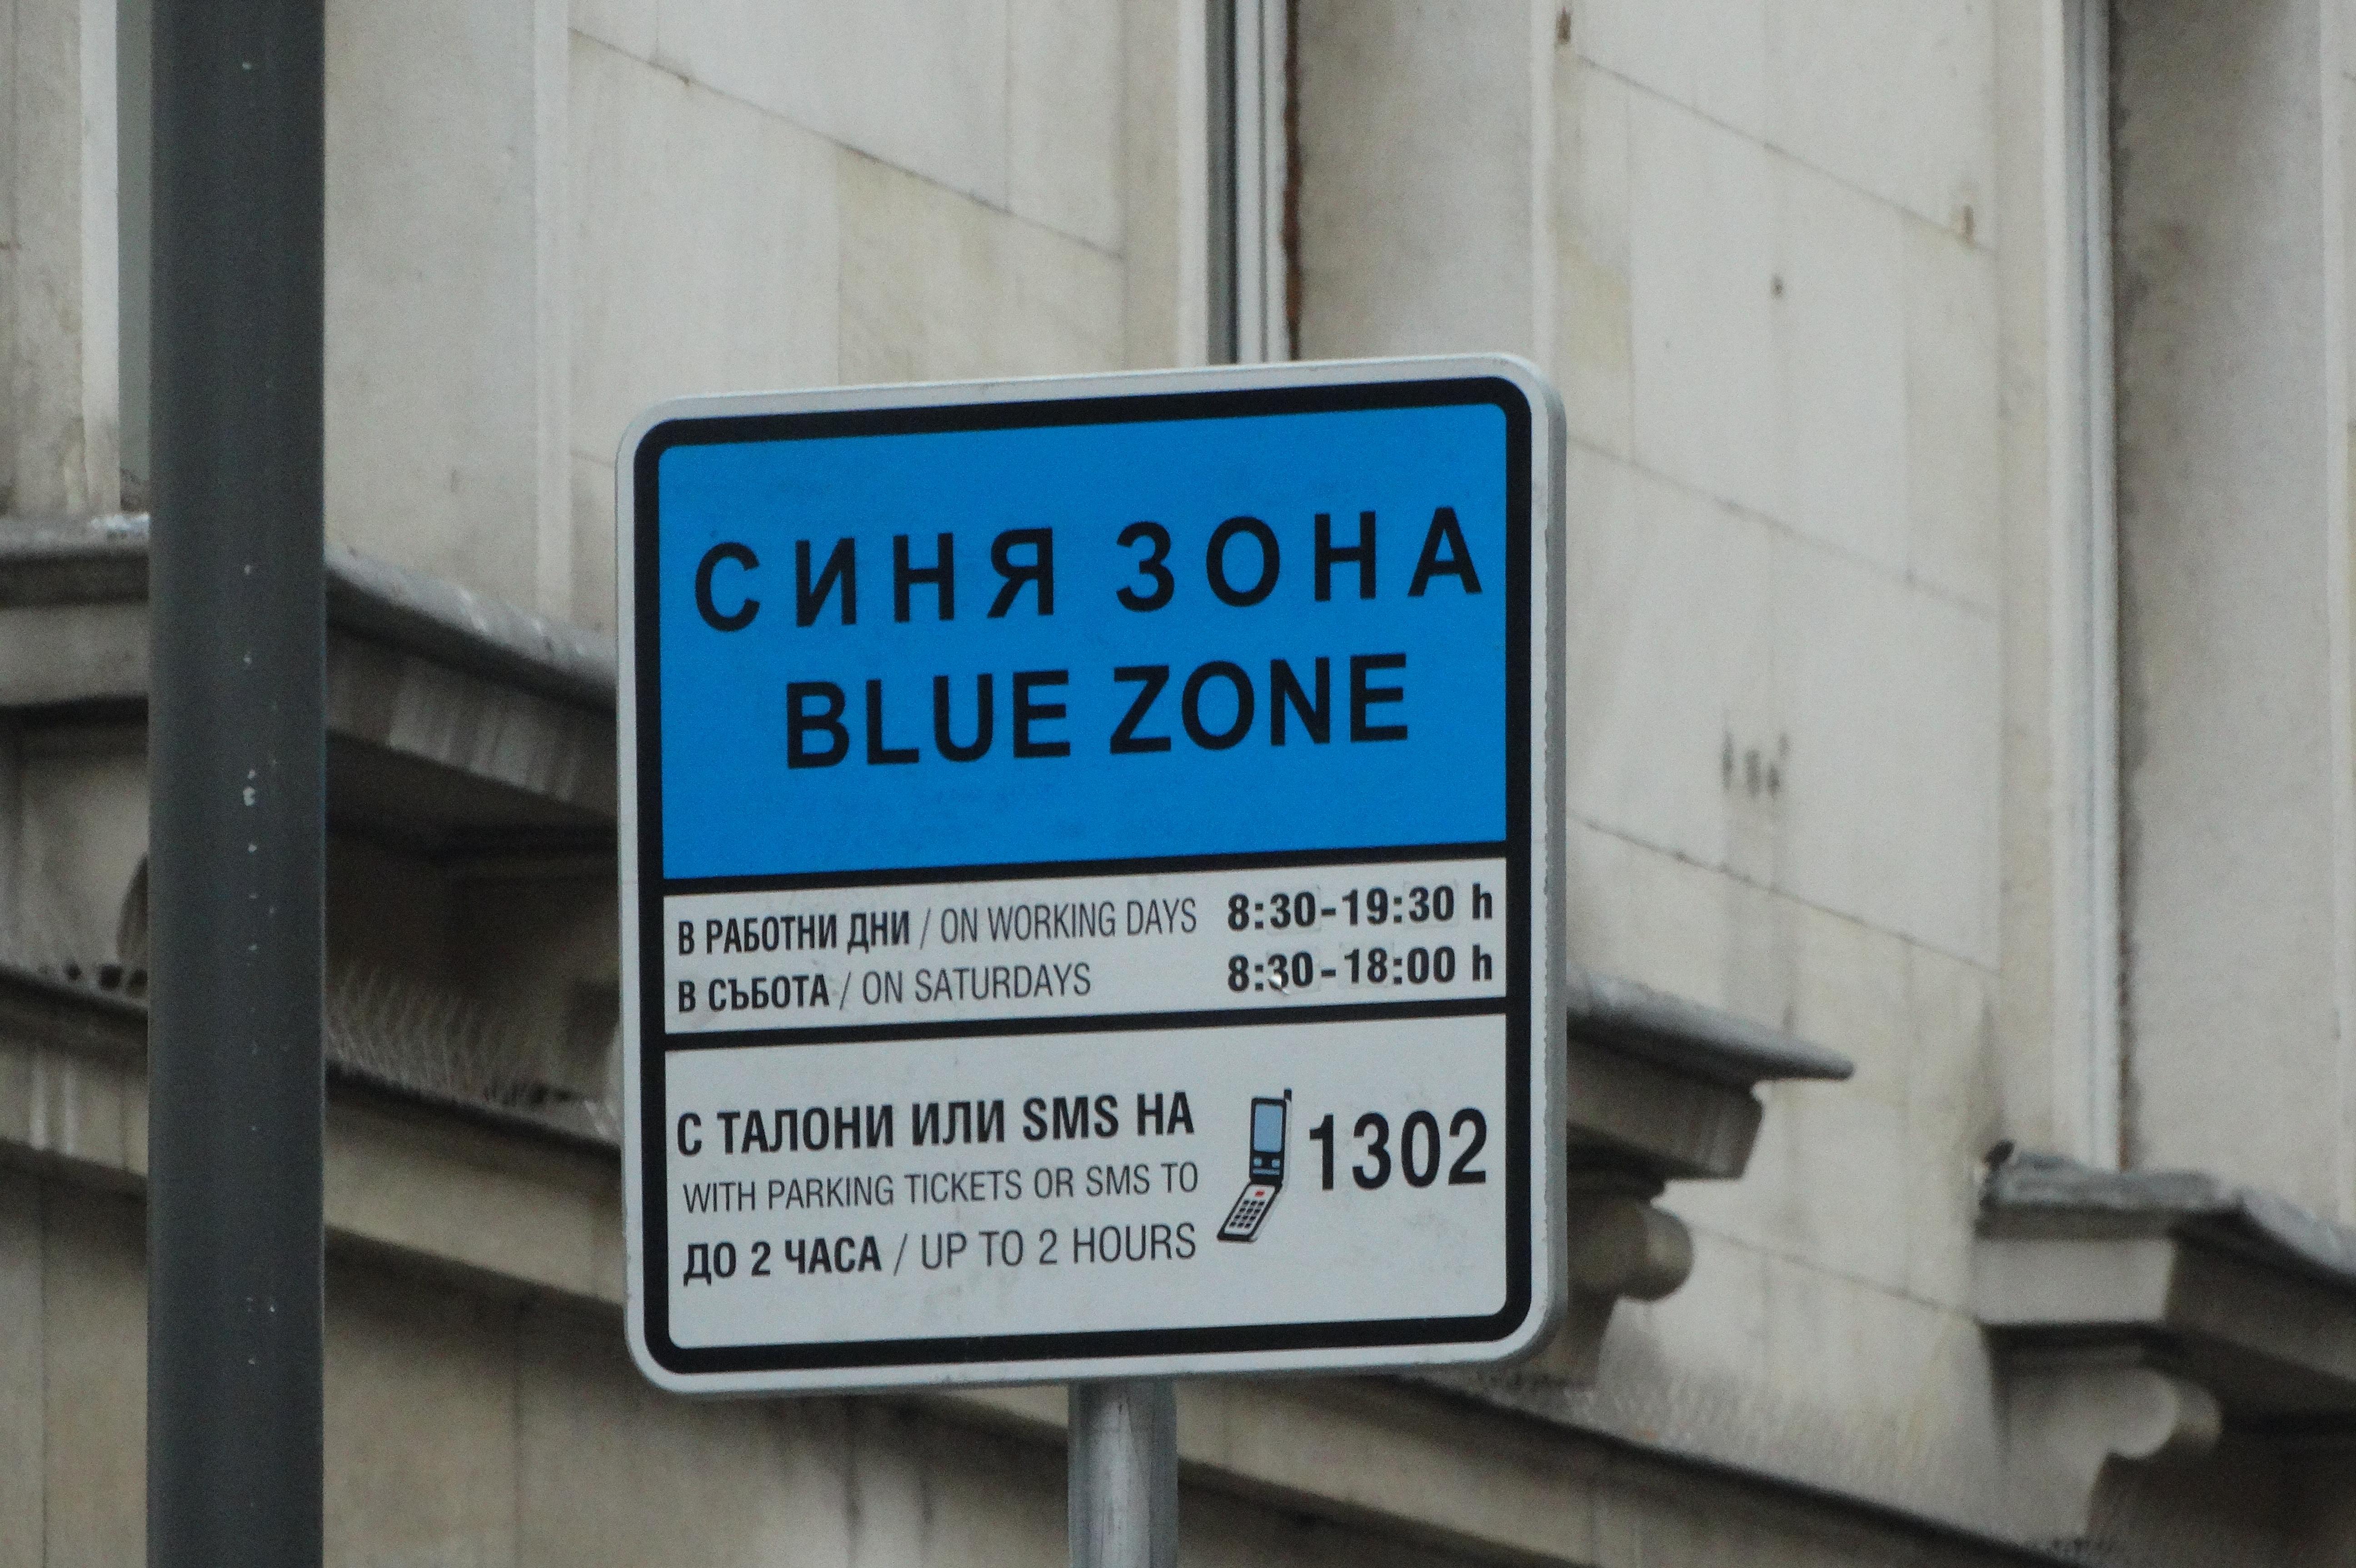 Граждани пред Столица.bg: Свършиха талоните за синя зона, продават ми за зе